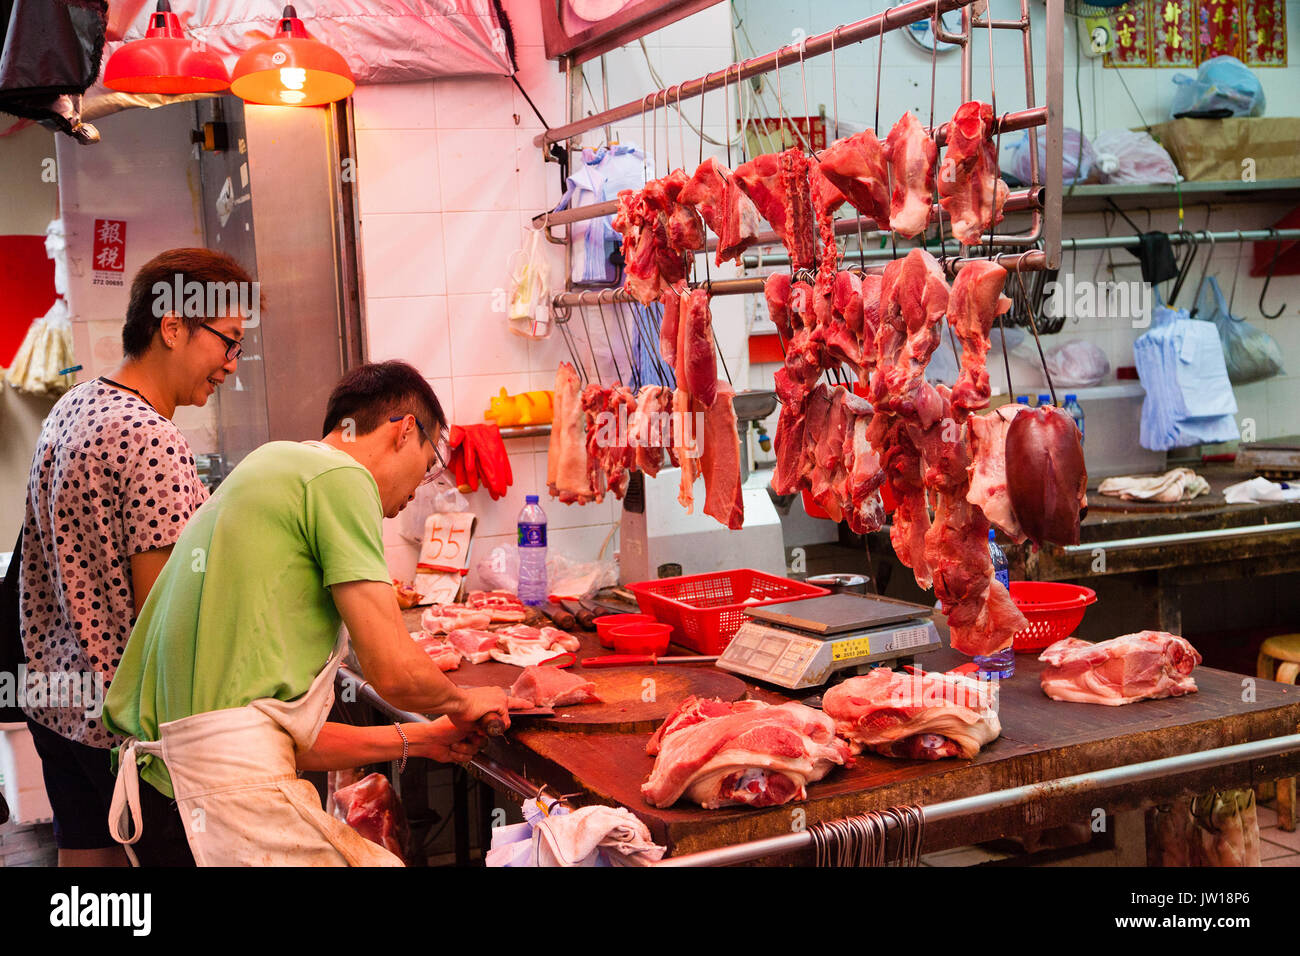 HONG KONG - Julio 7, 2017: un carnicero cortar un trozo de carne de cerdo para un cliente en un mercado callejero Shui Po Shum en Hong Kong. Foto de stock